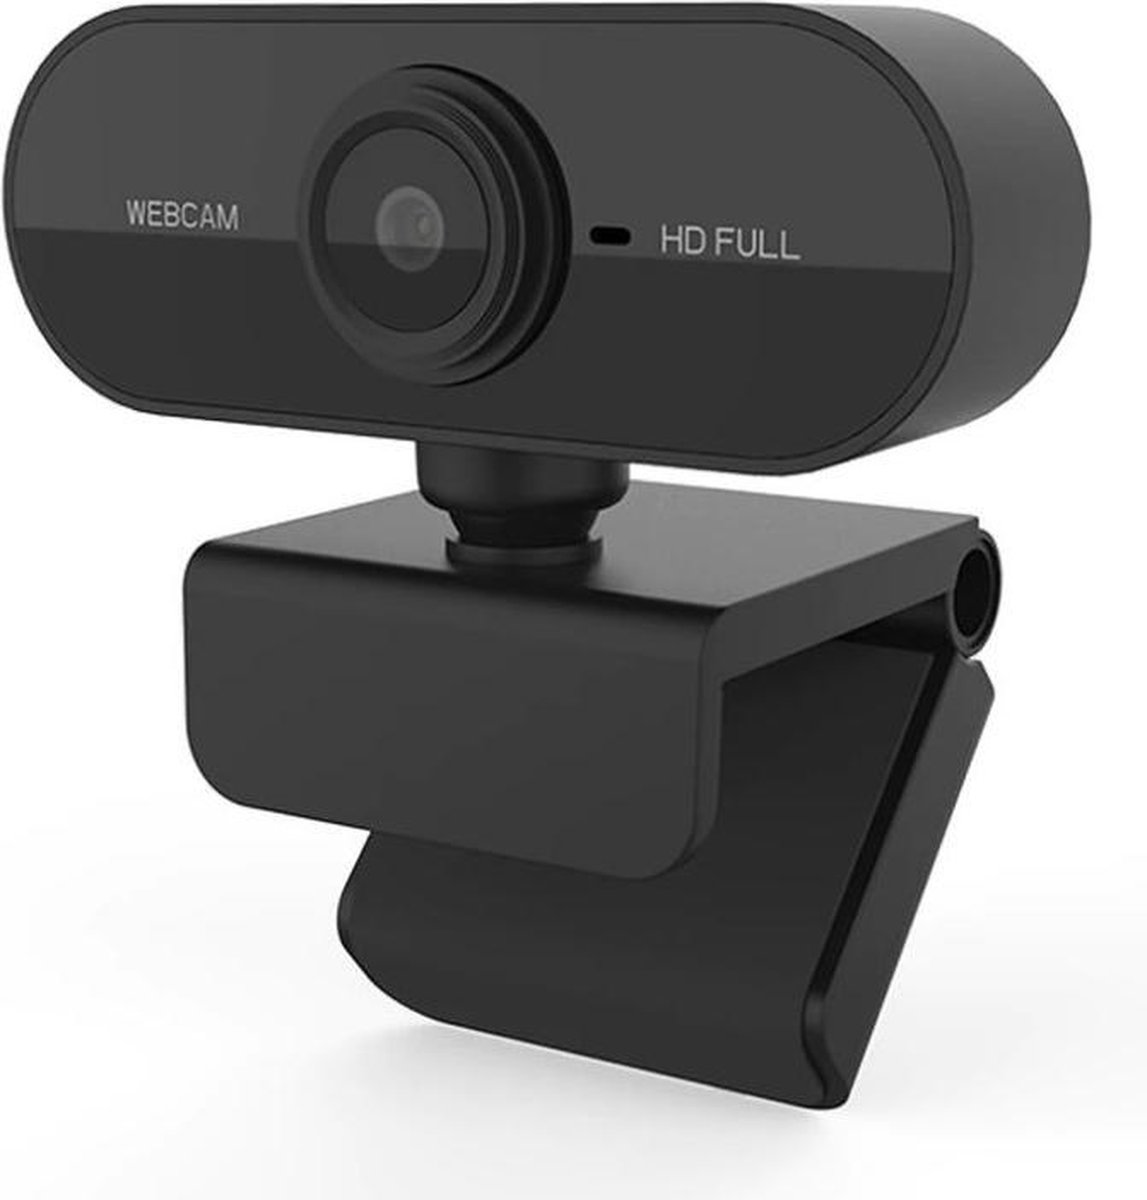 Webcam USB Horizontal à 360 ° de Rotation 2.0 avec Microphone numérique pour Les appels vidéo de Bureau PC Portable,Noir 1080P HD Webcam USB PC Webcam Cam HD Webcam 